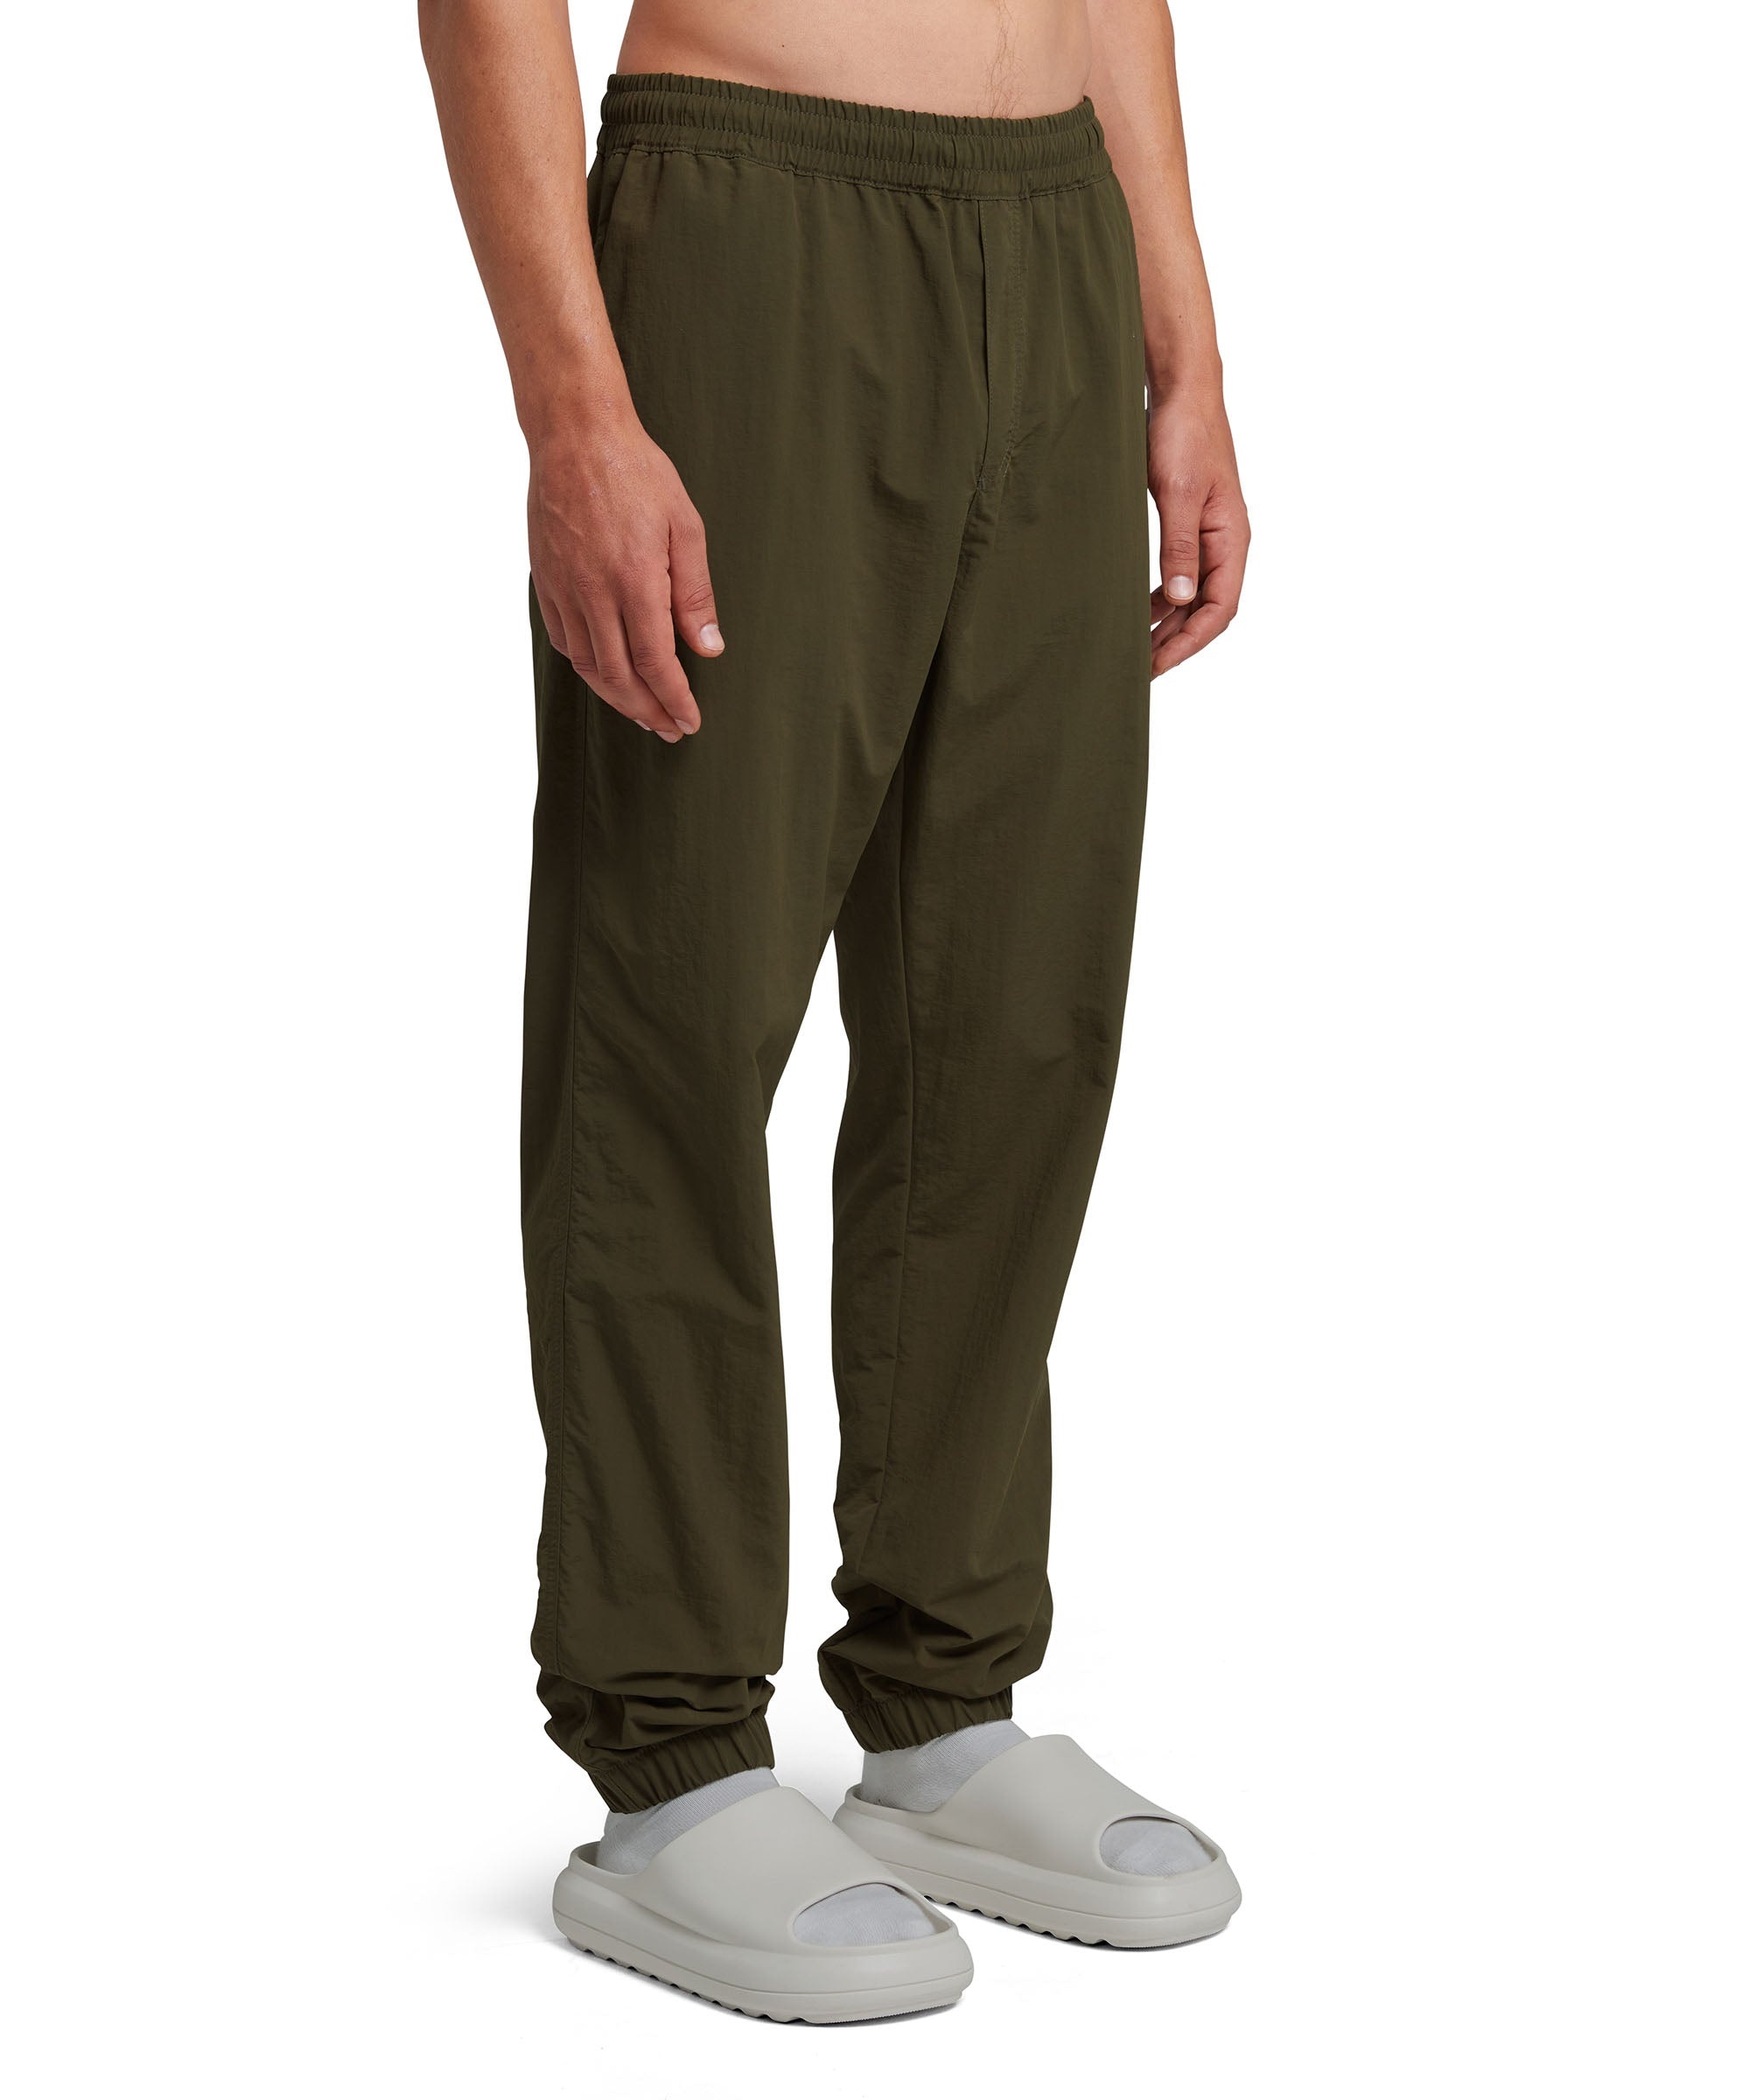 Nylon pants with elasticized waistband - 4